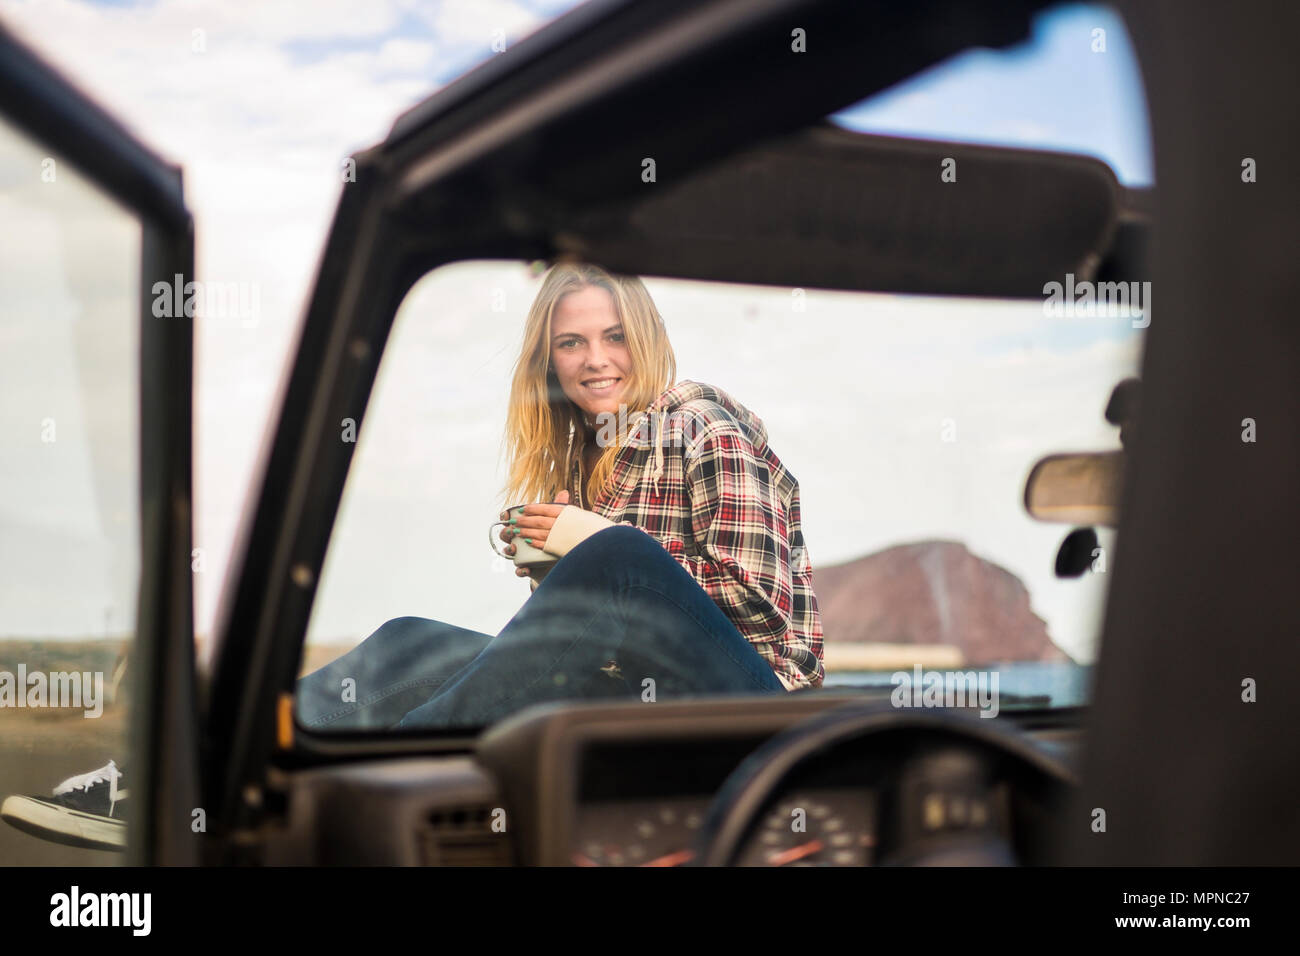 La liberté et vacances pour belle blonde portrait jeune femme assis sur le nez d'un off road voiture noire. Rétro-éclairage et de la lumière du soleil à wa Banque D'Images